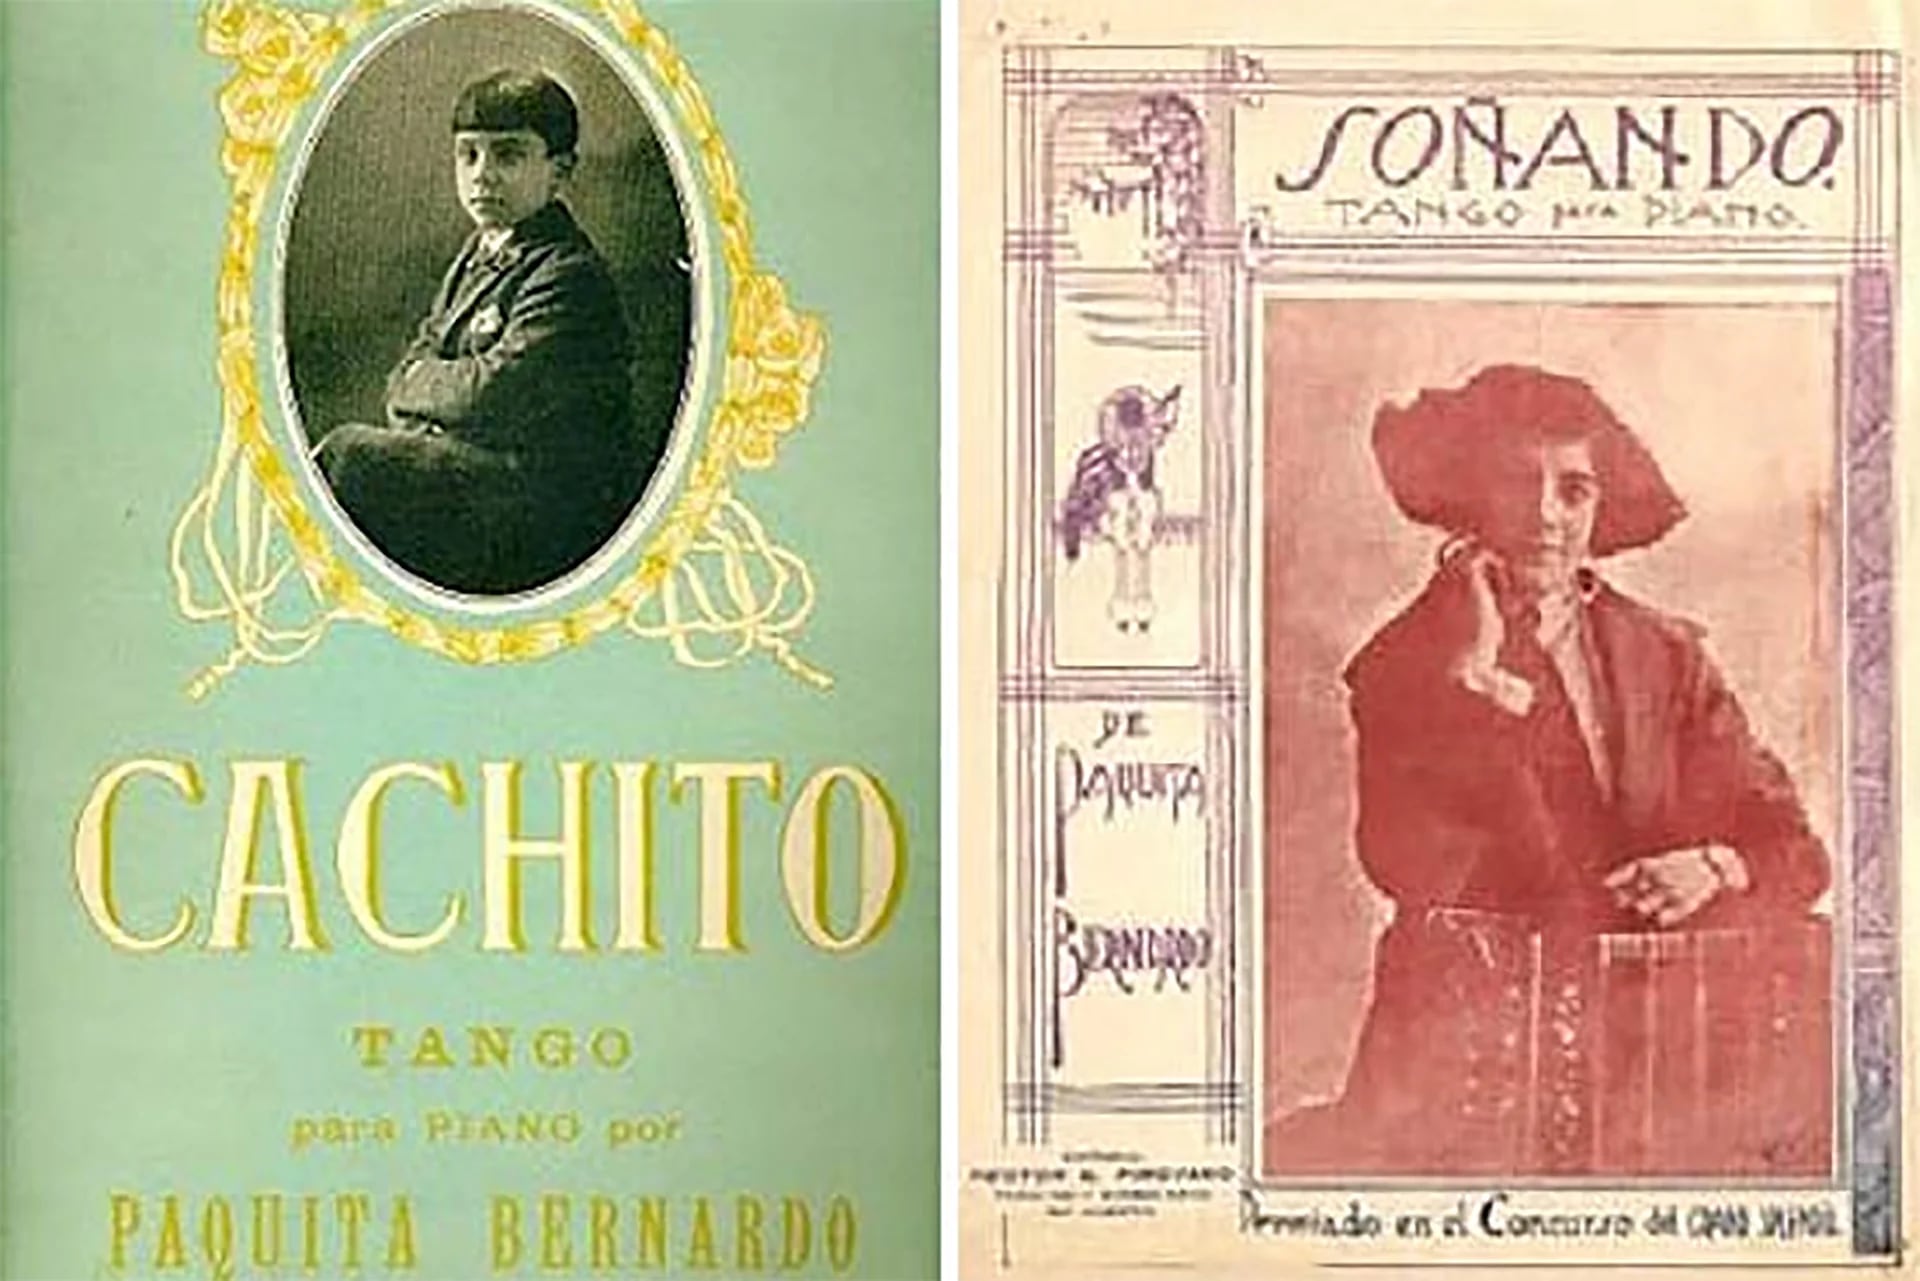 Partitura del tango compuesto por Paquita Bernardo que fue grabado por Carlos Gardel